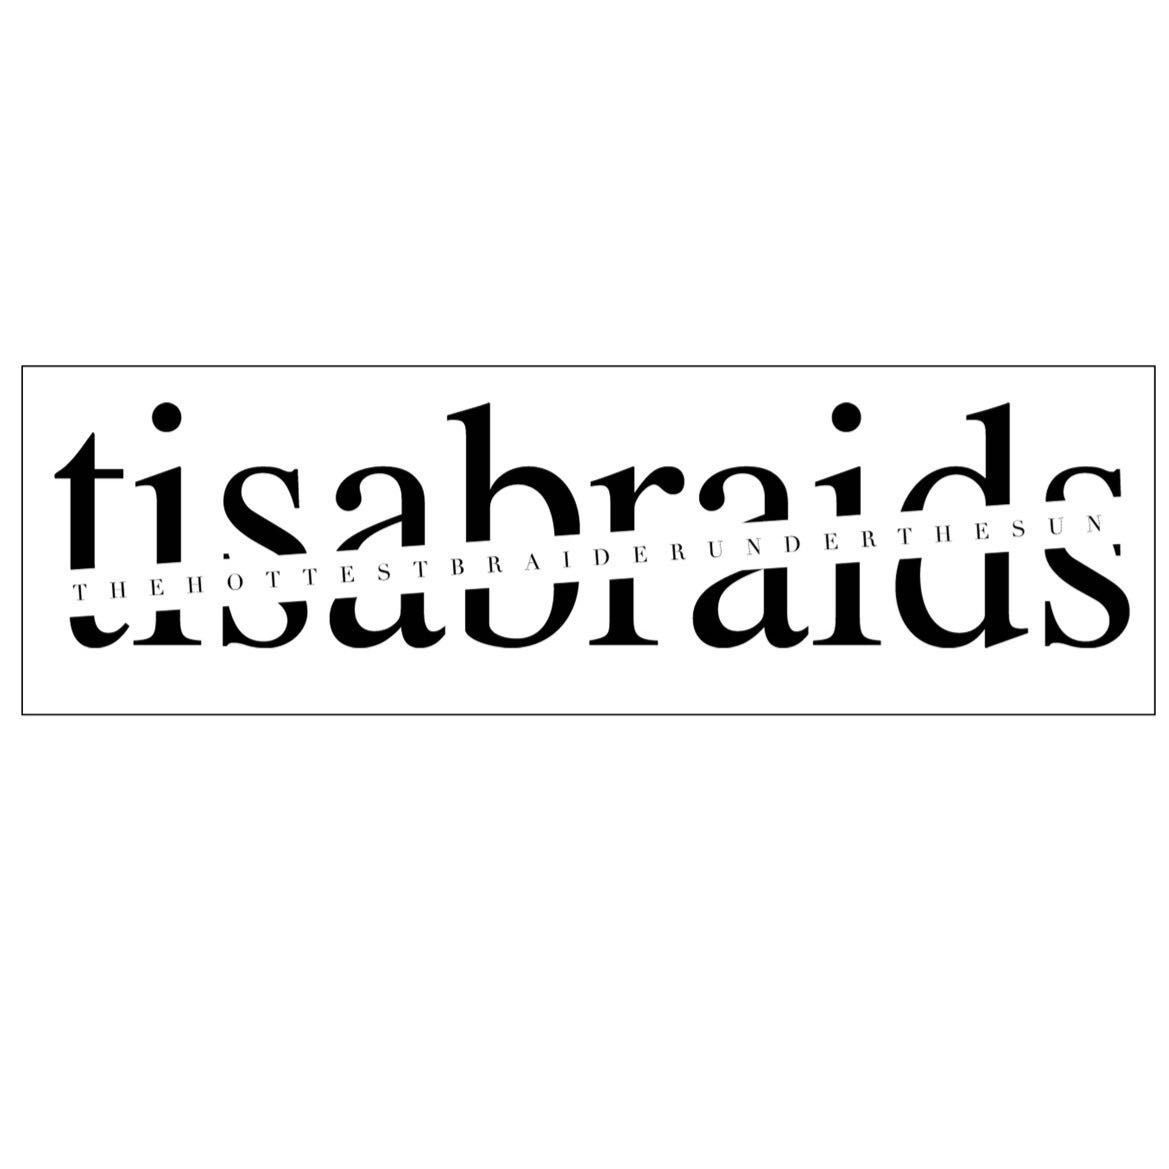 Tisa Braids The Hottest Braider Under The Sun, 1860 S Blue Island Ave, Chicago, 60608